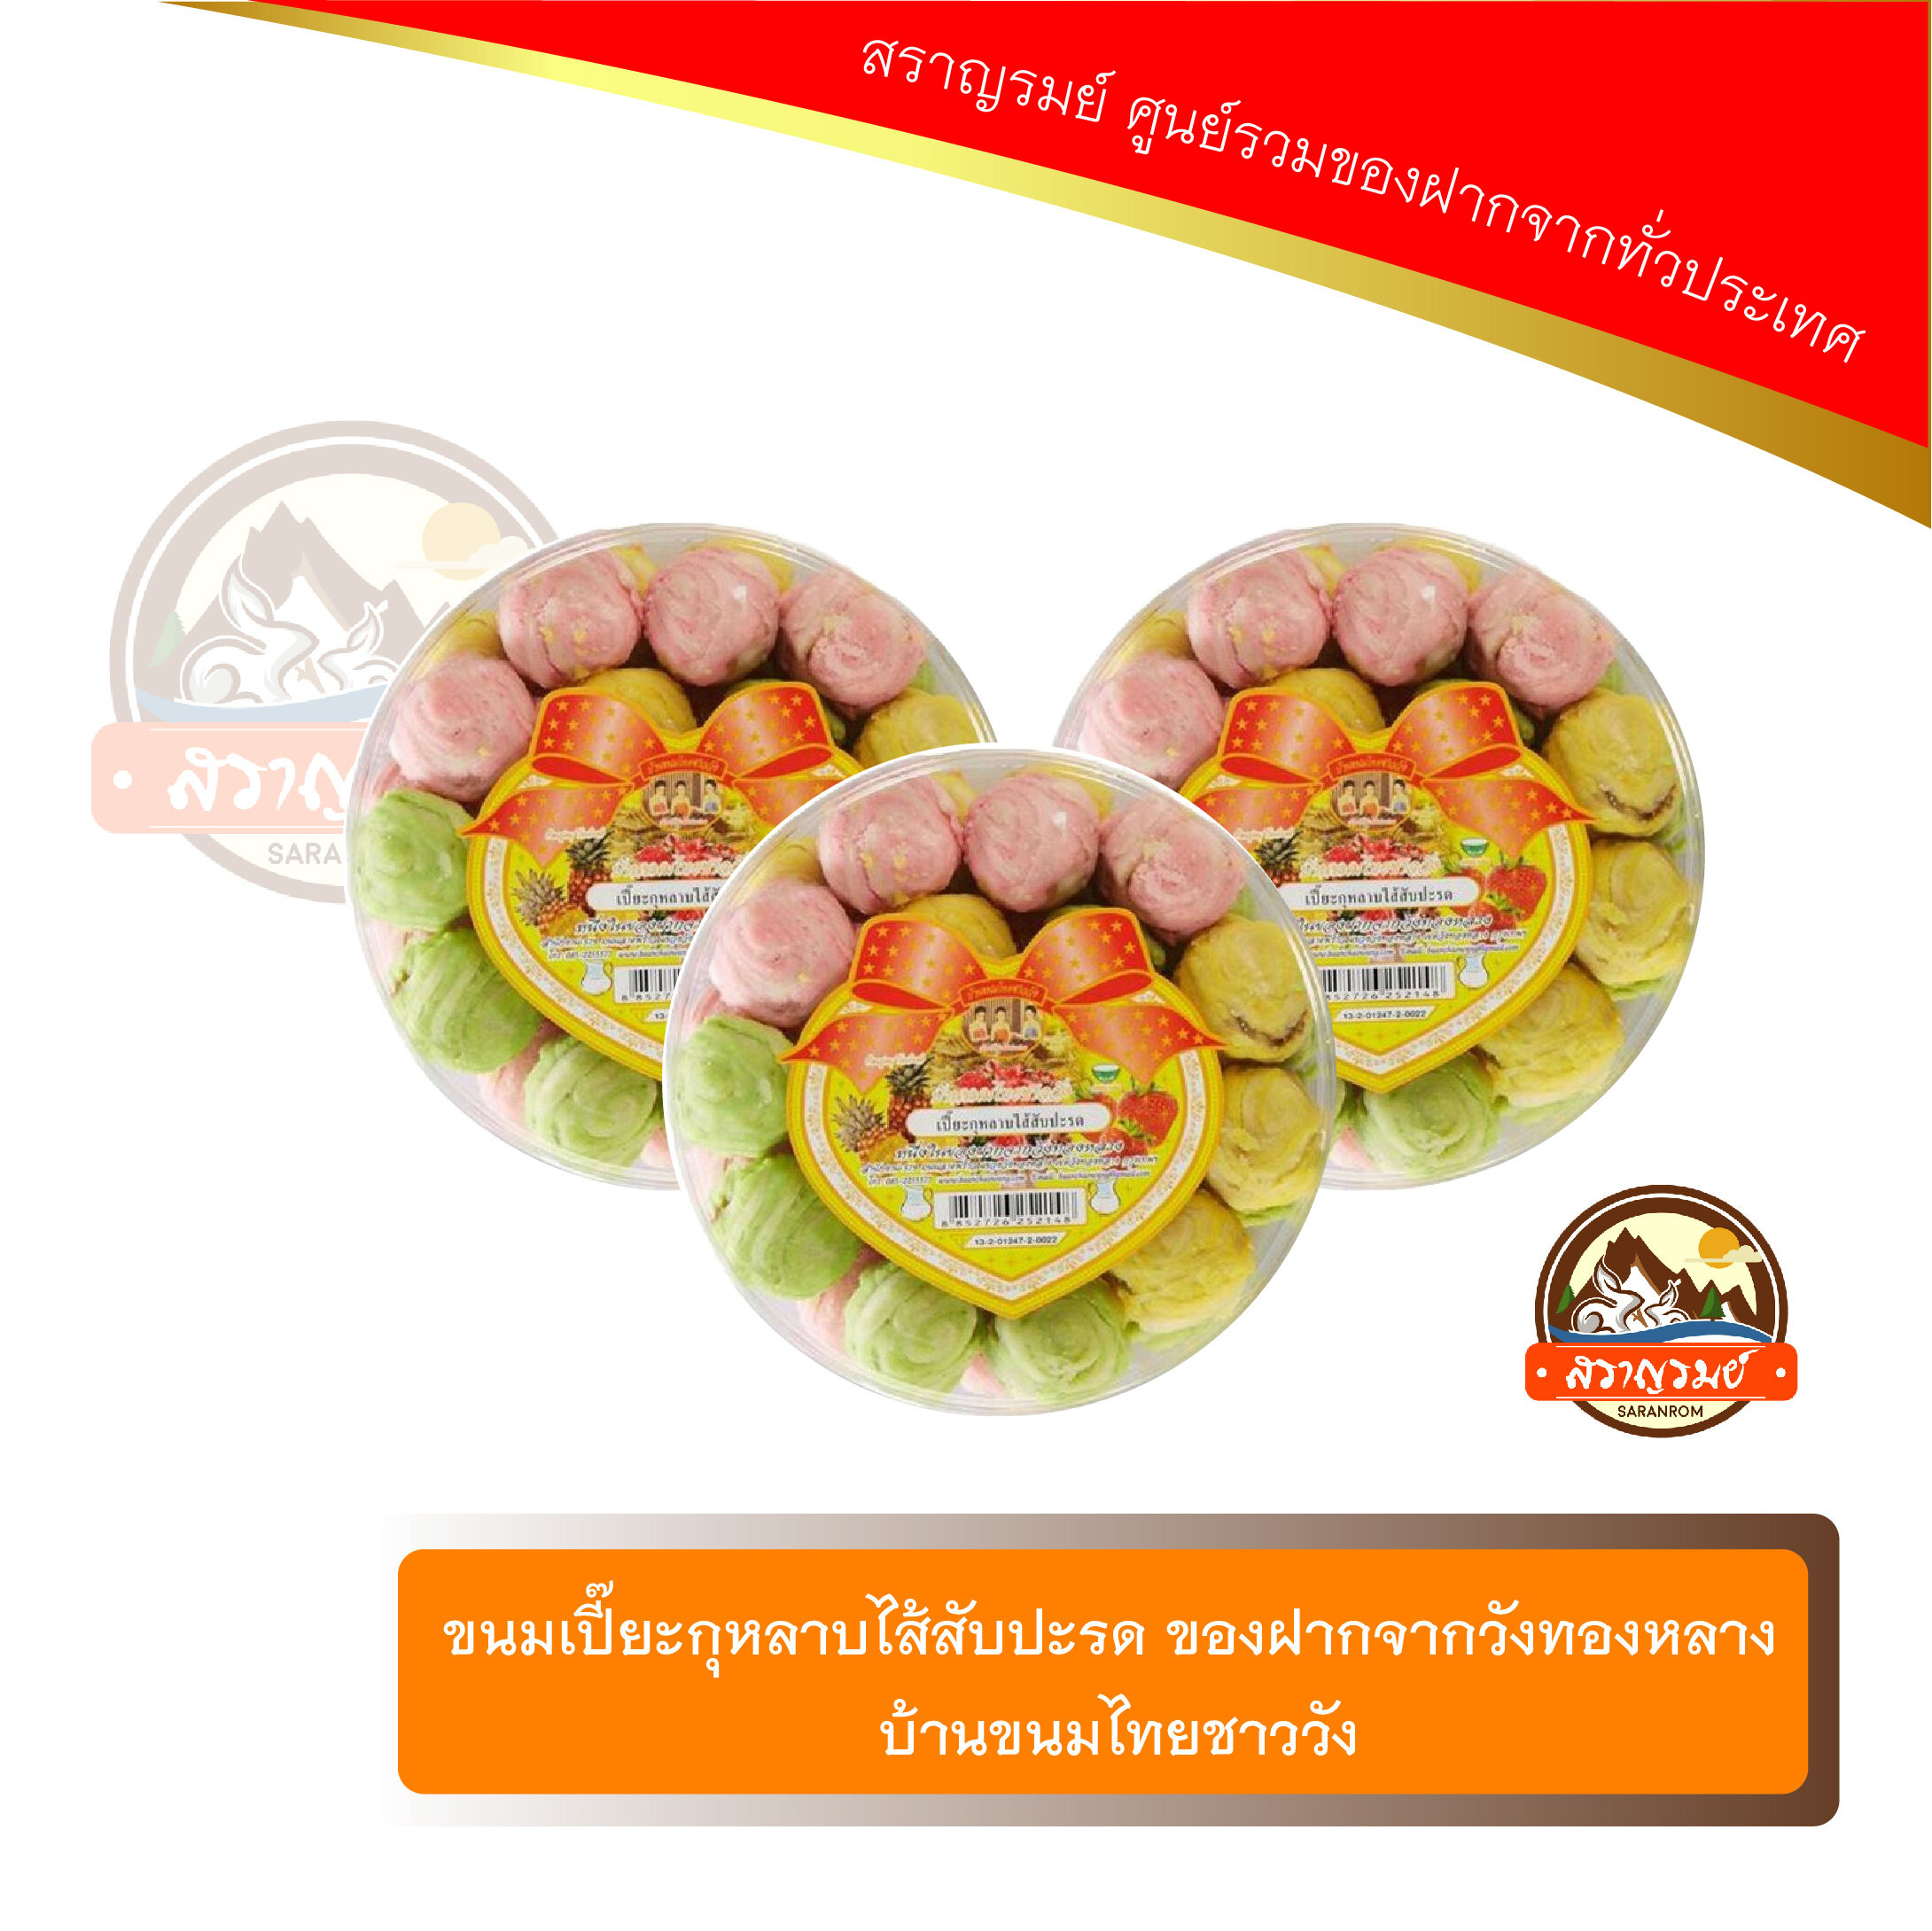 ขนมเปี๊ยะ กุหลาบไส้สับปะรด ของฝากจากวังทองหลาง บ้านขนมไทยชาววัง